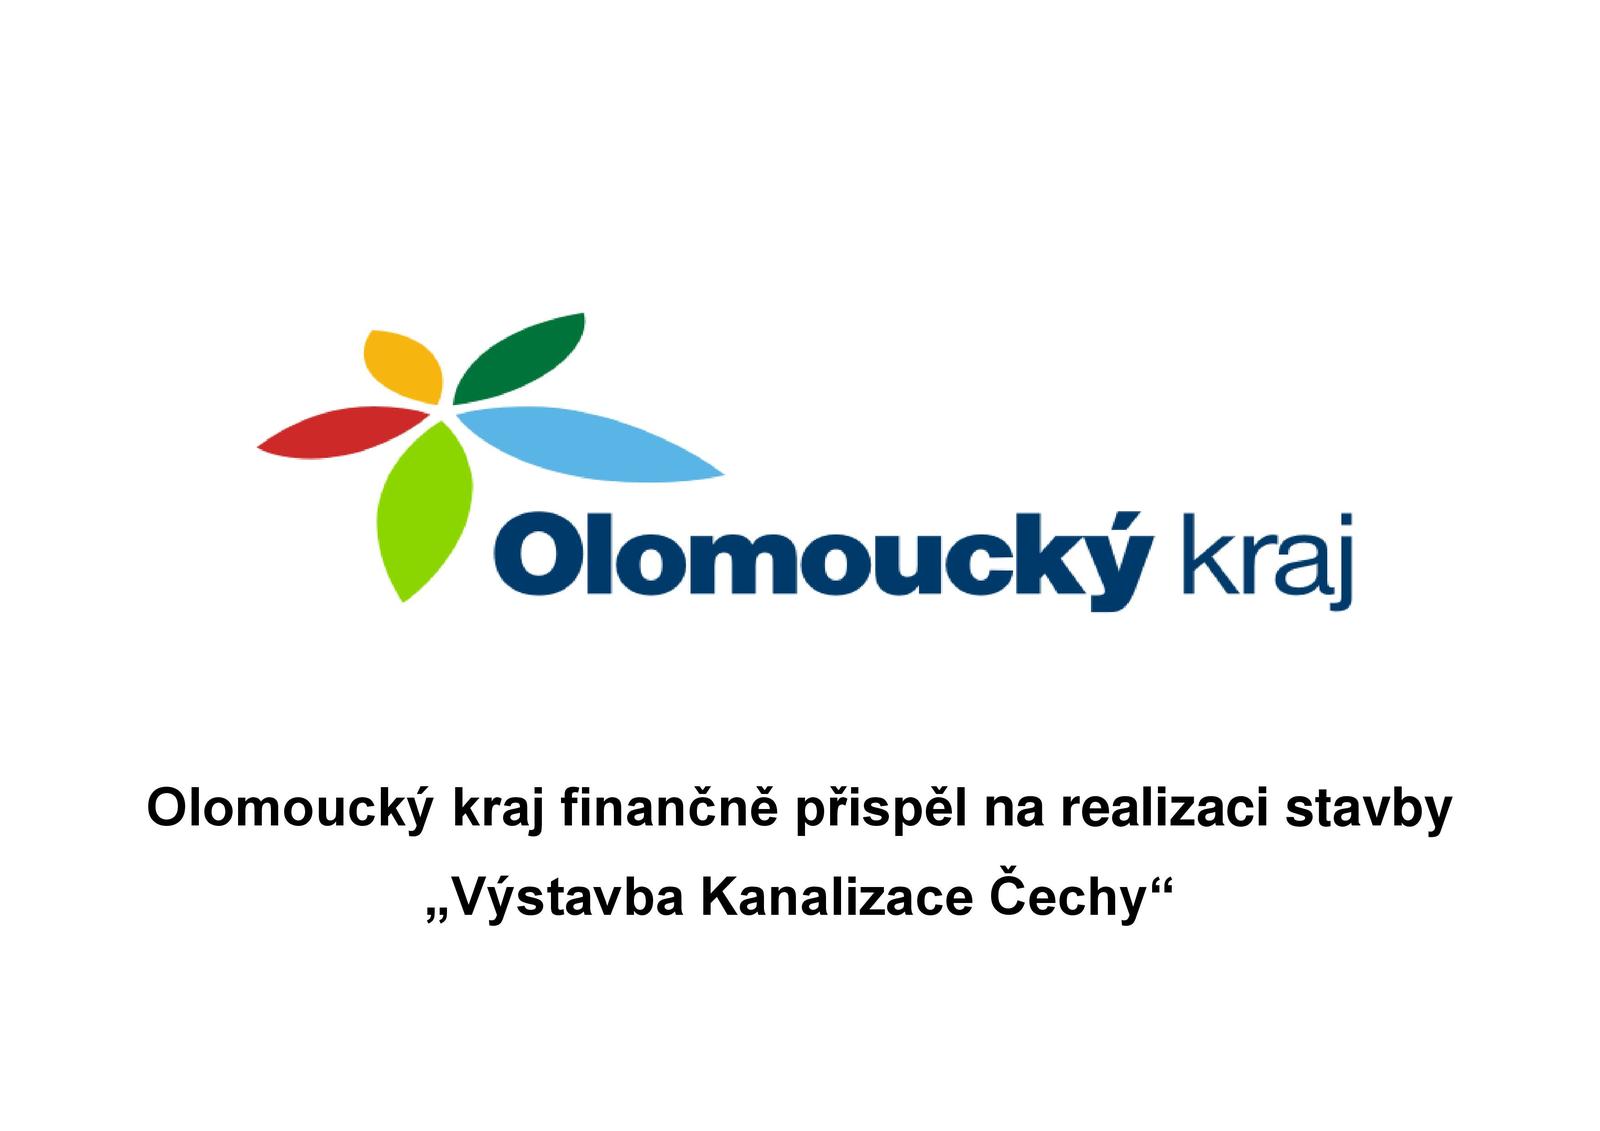 Olomoucký kraj přispěl na výstavbu Kanalizace Čechy